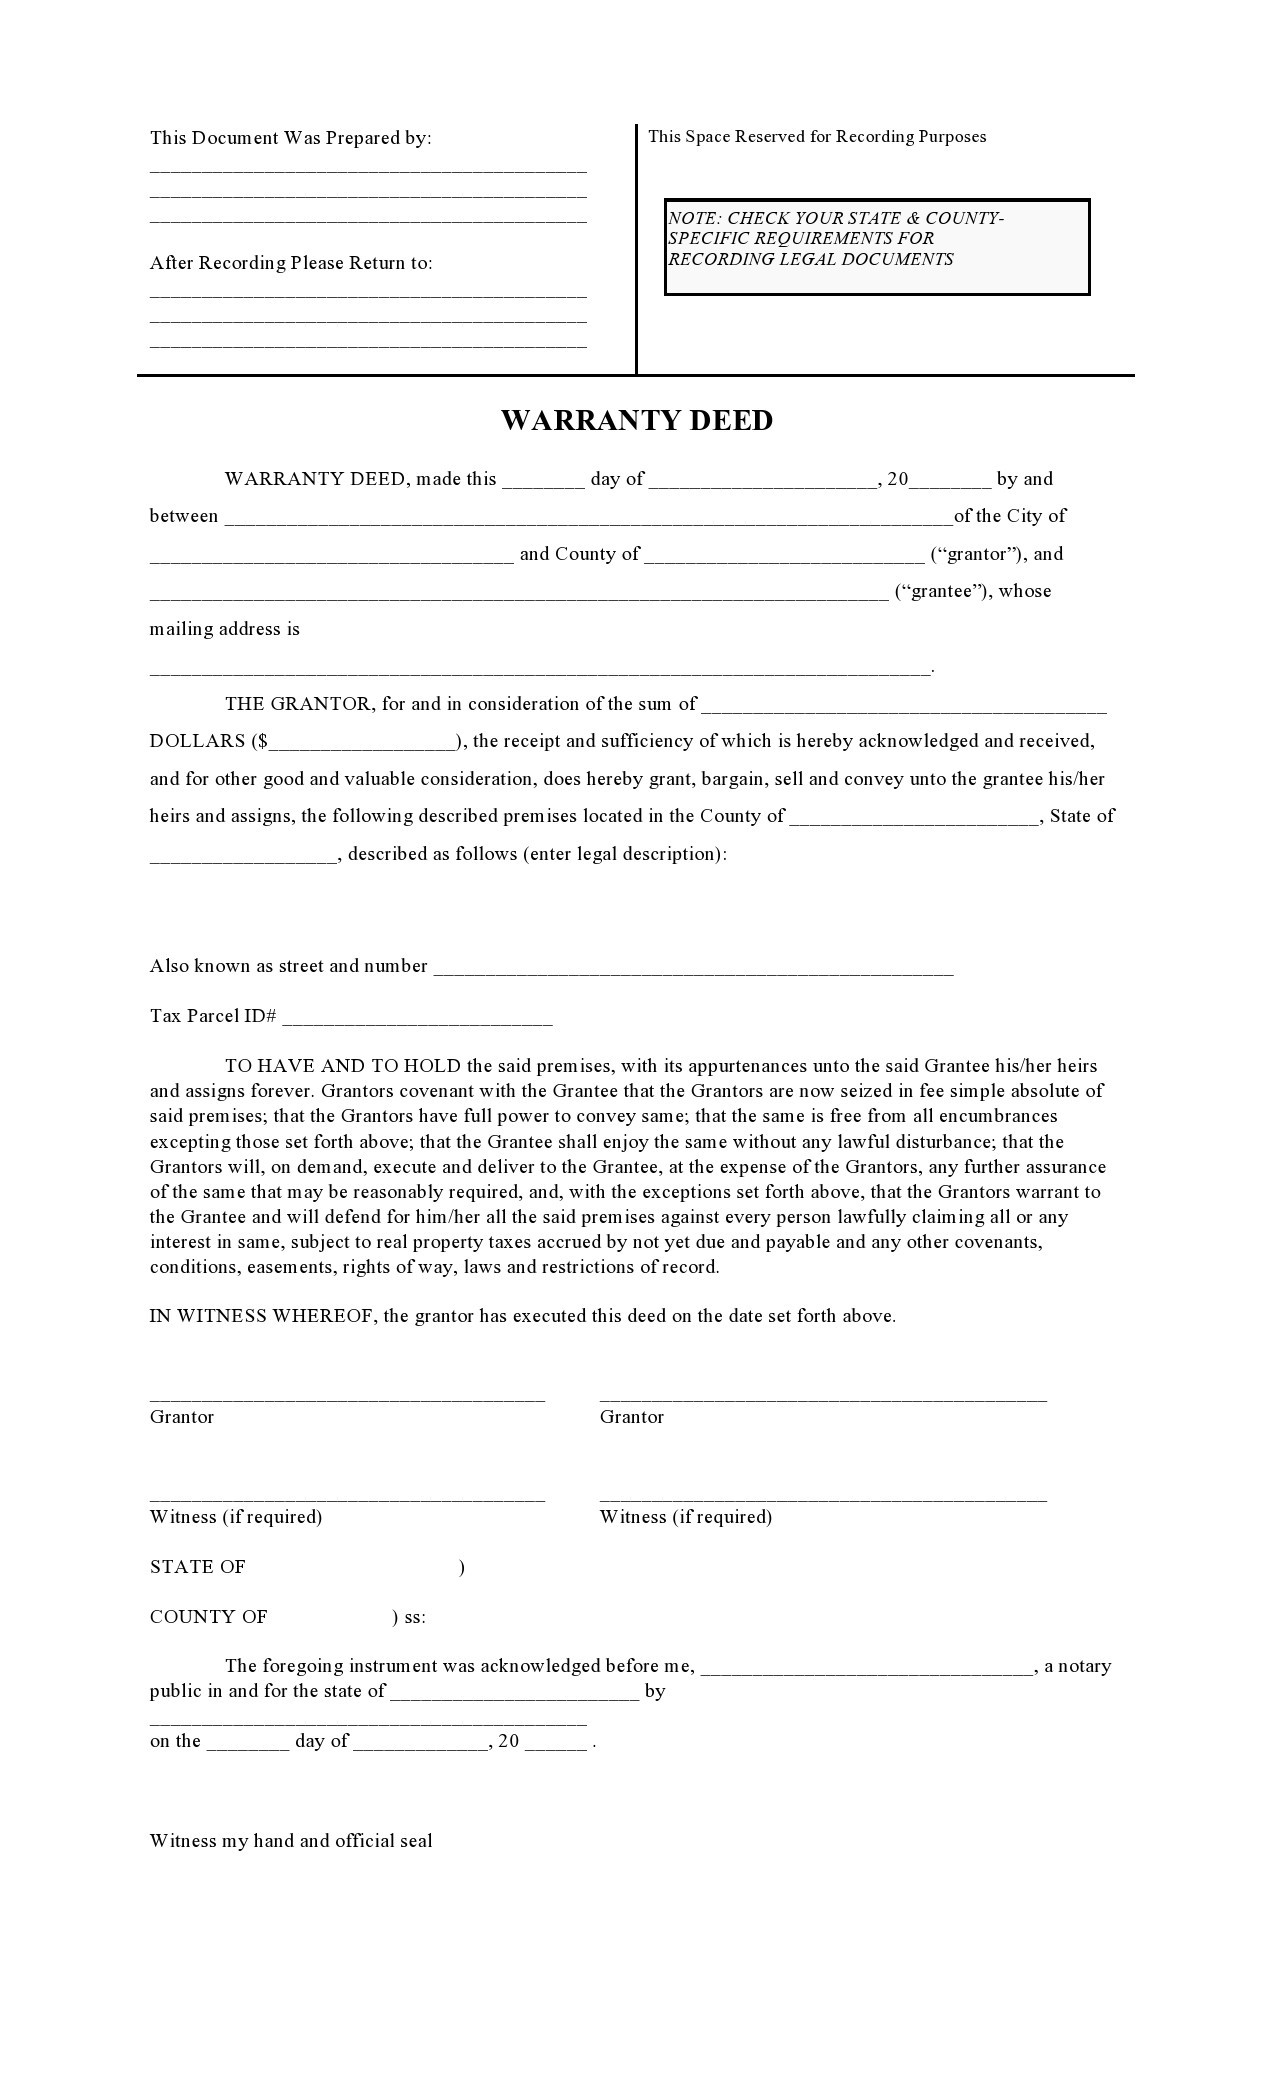 Free warranty deed form 04